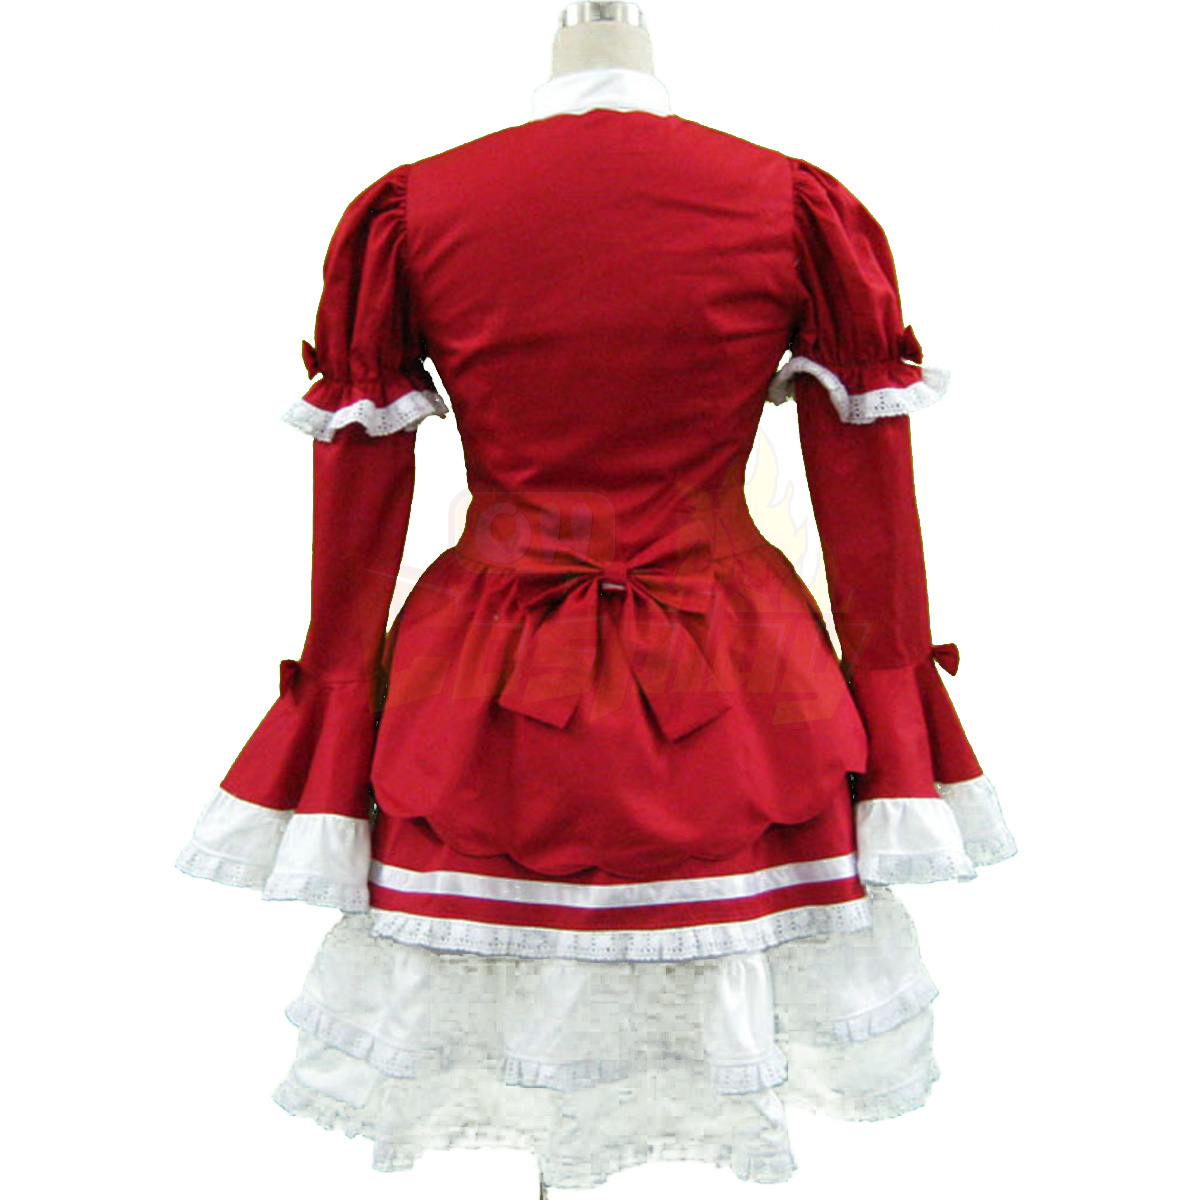 호화로운 로리타 문화 빨간와 화이트 민소매 짧은 드레스 3 코스프레